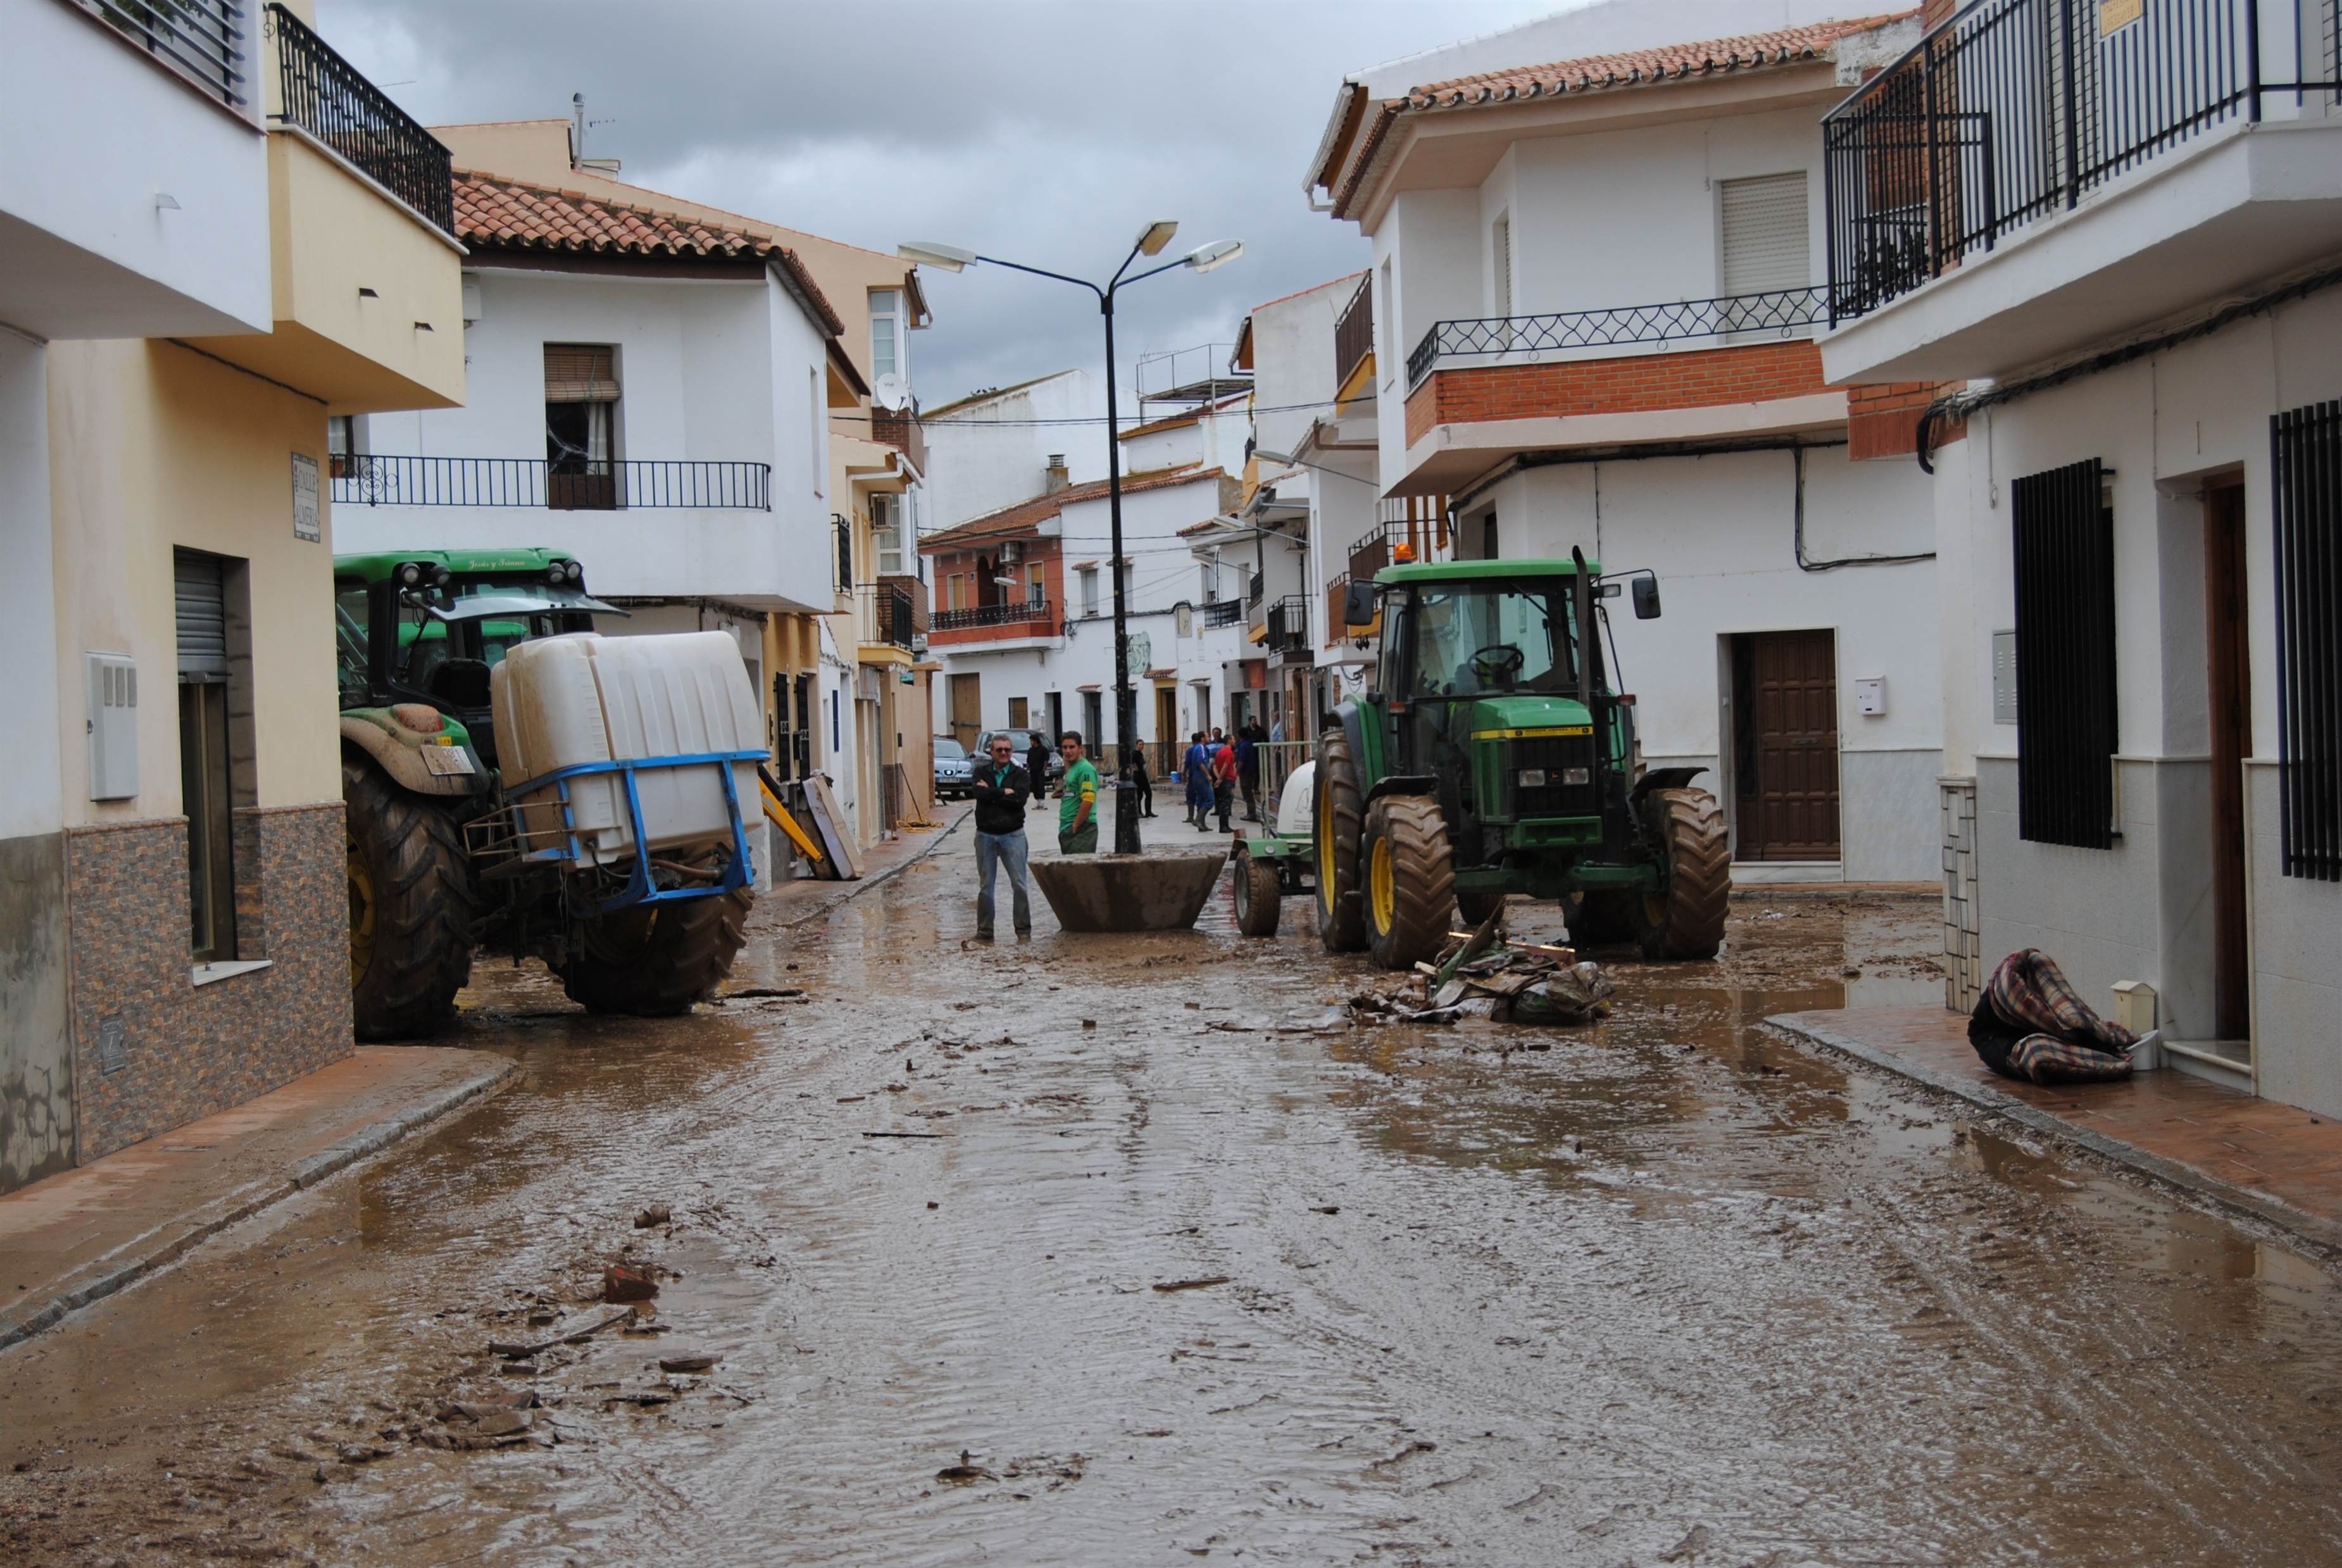 Municipios del Guadalhorce continúan sin recibir parte de las ayudas un año después de las inundaciones